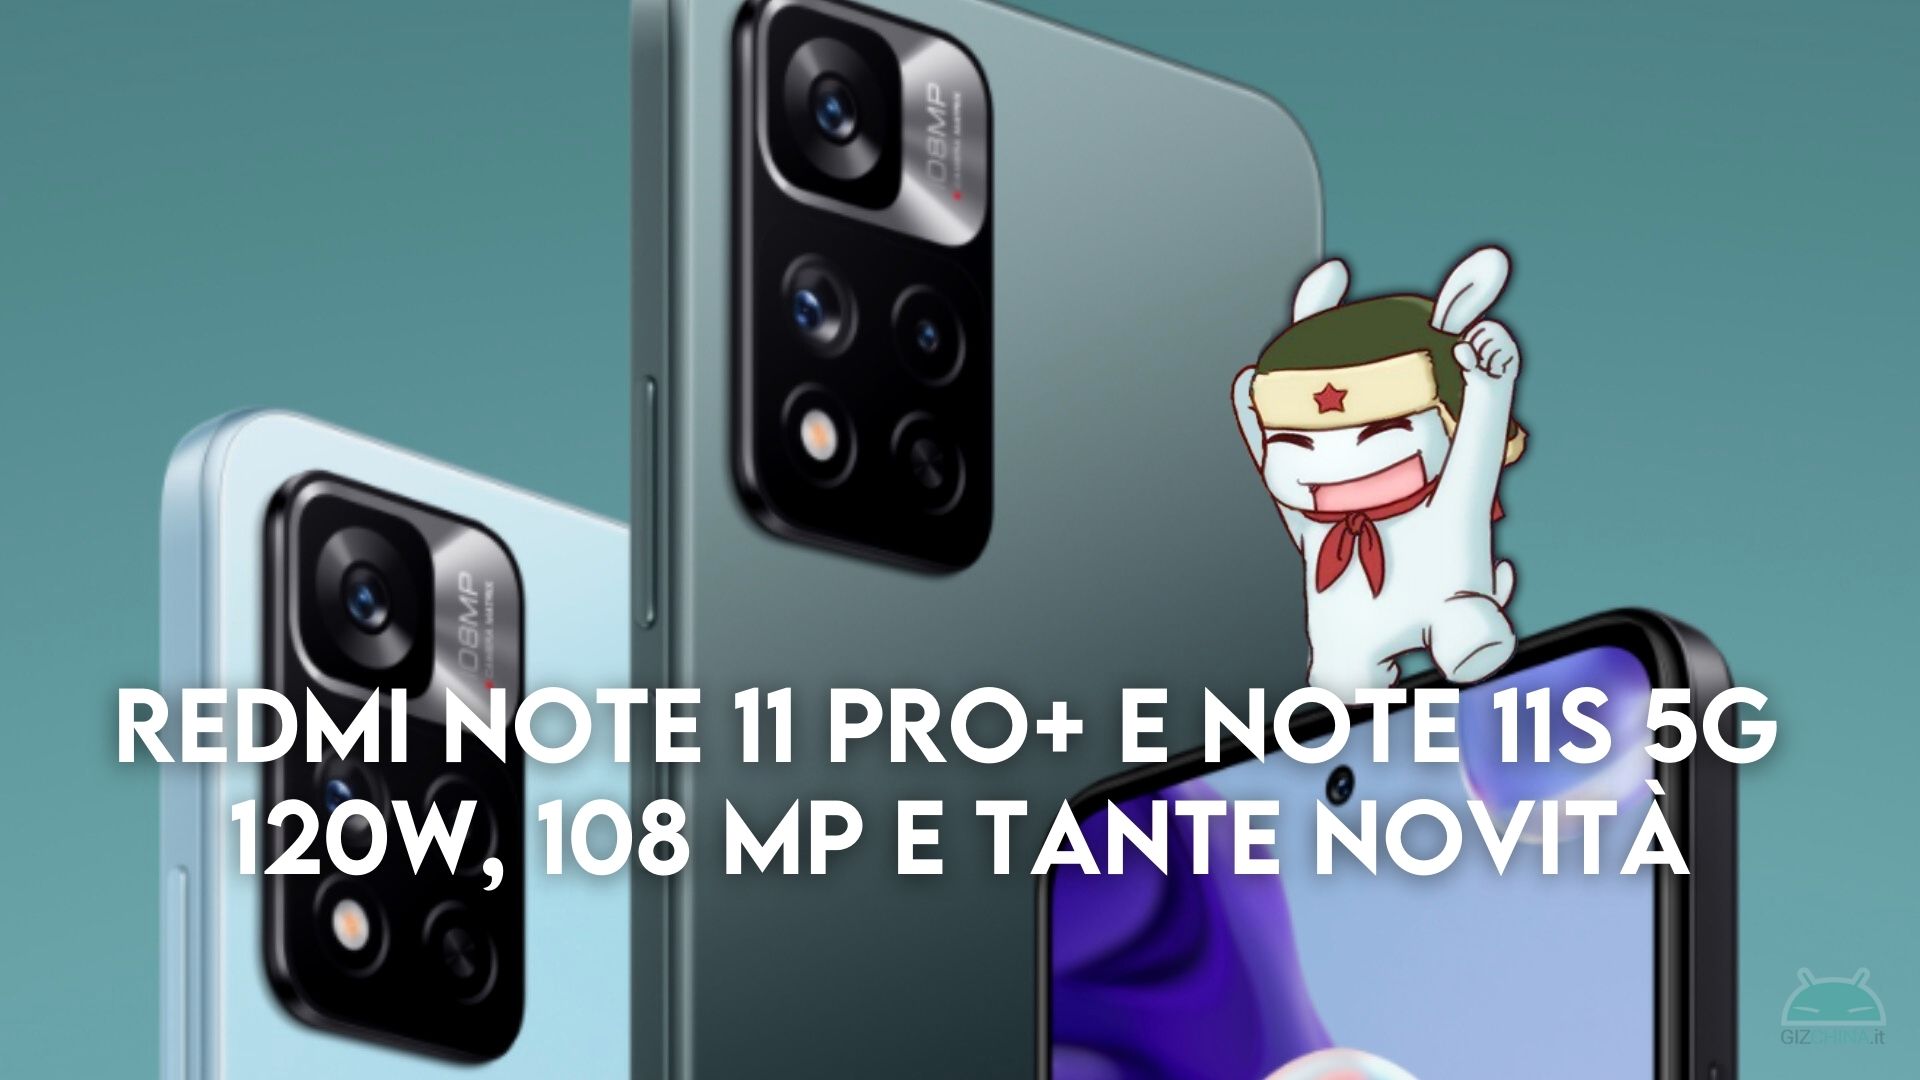 Redmi Note 11 Pro+ e 11S 5G ufficiali in Italia: la famiglia si allarga! - GizChina.it